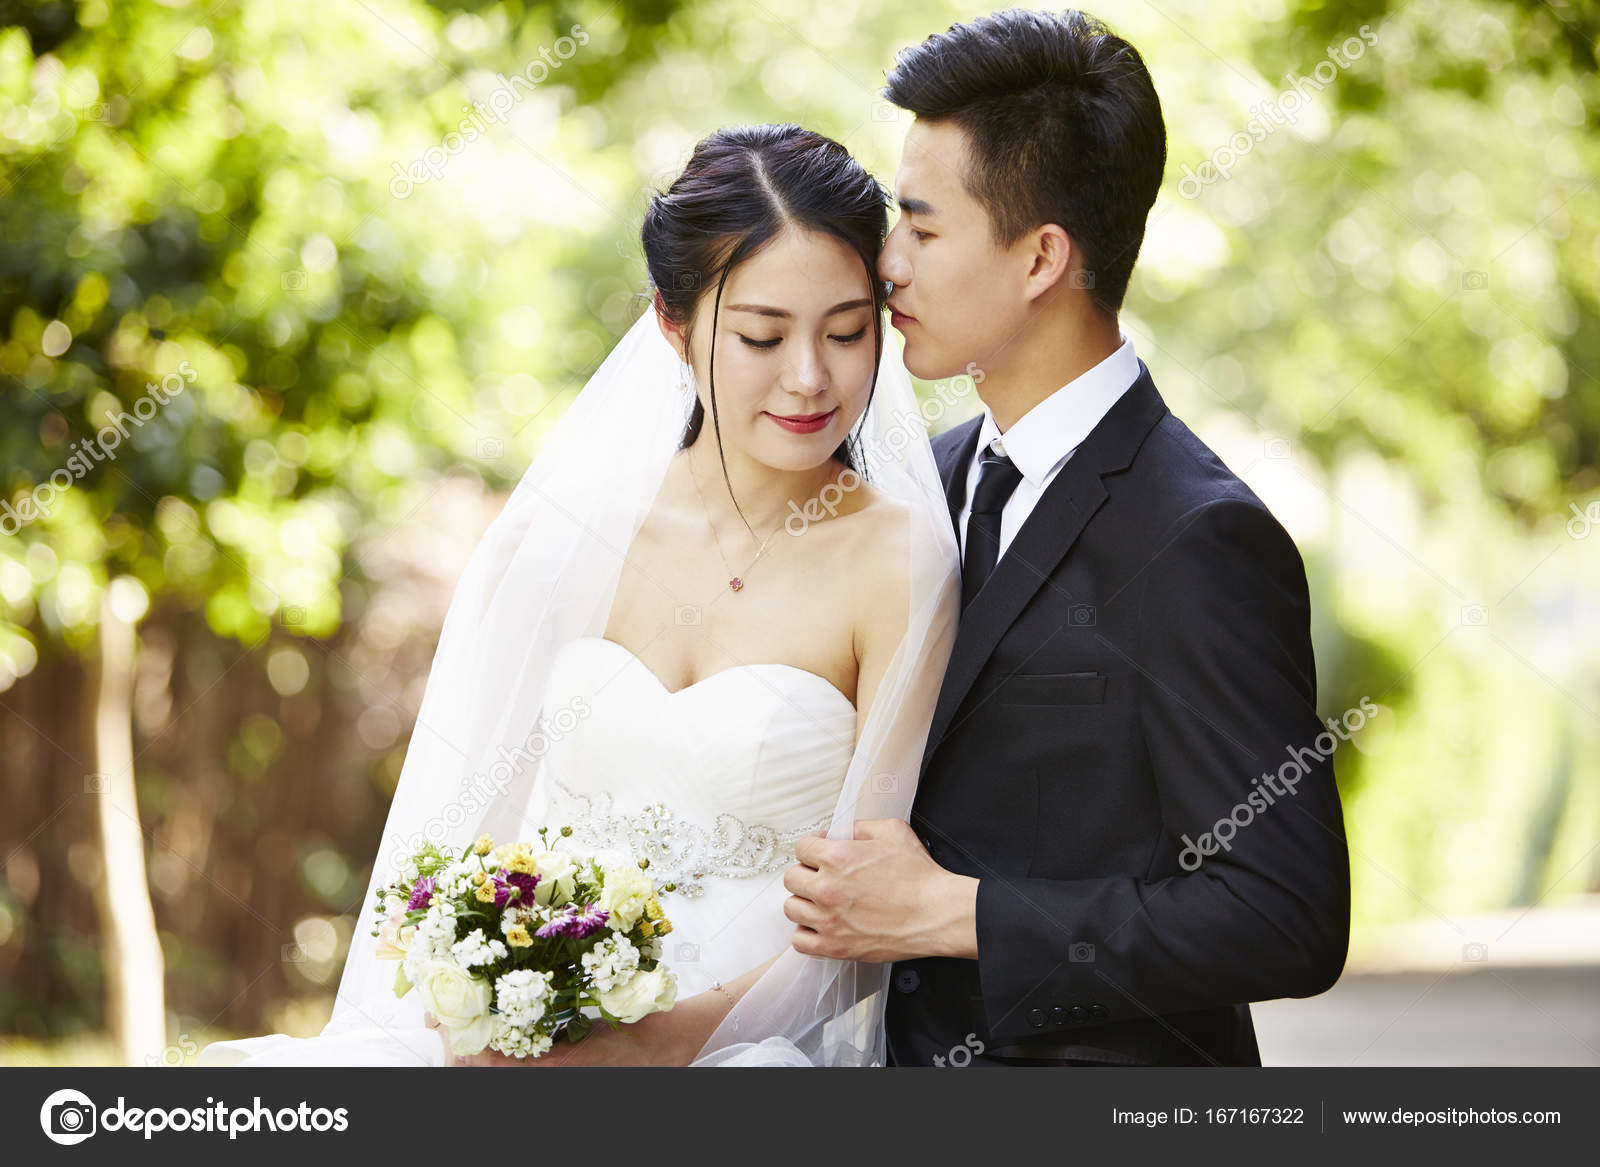 Asian Couple Outdoor